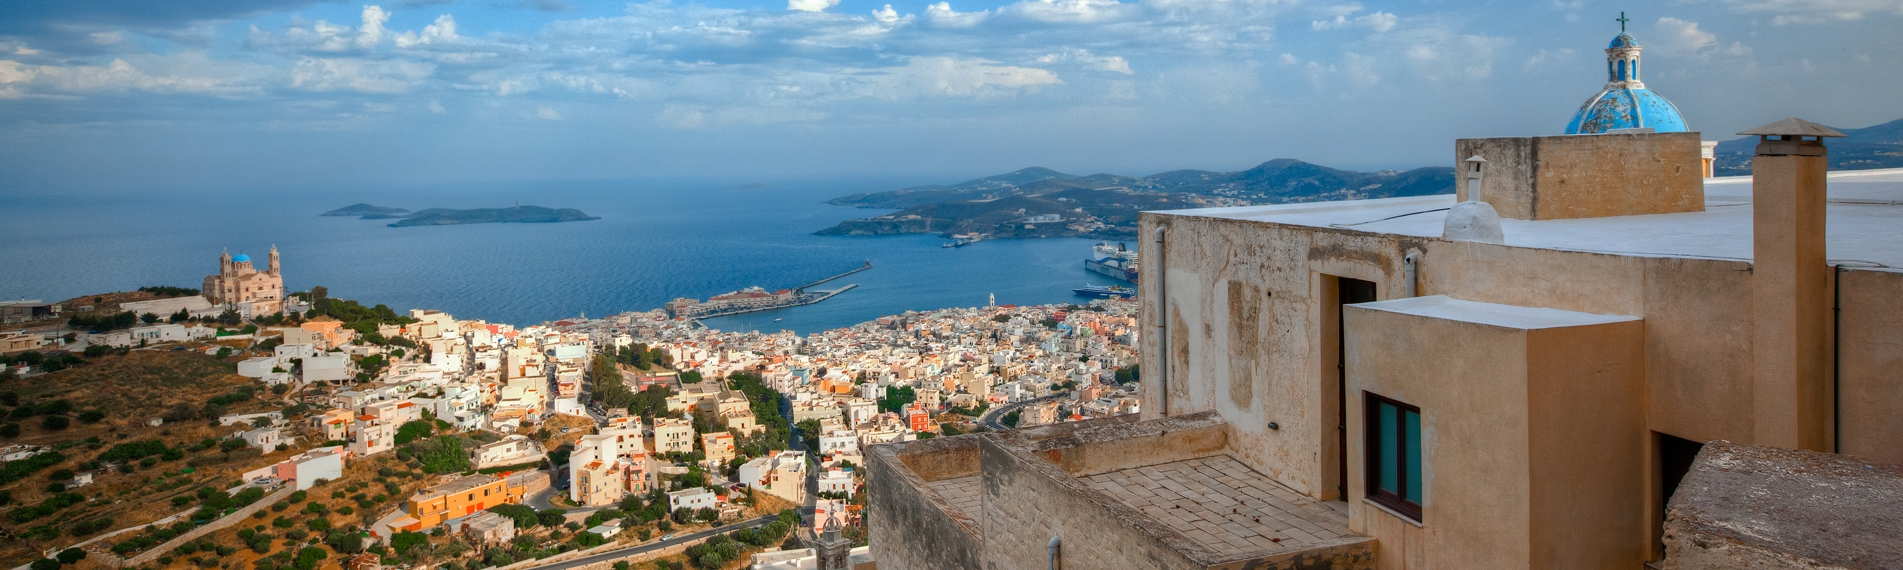 Panorama di Syros con vista sulle abitazioni, sul golfo e delle altre isole delle Cicaldi all'orizzonte